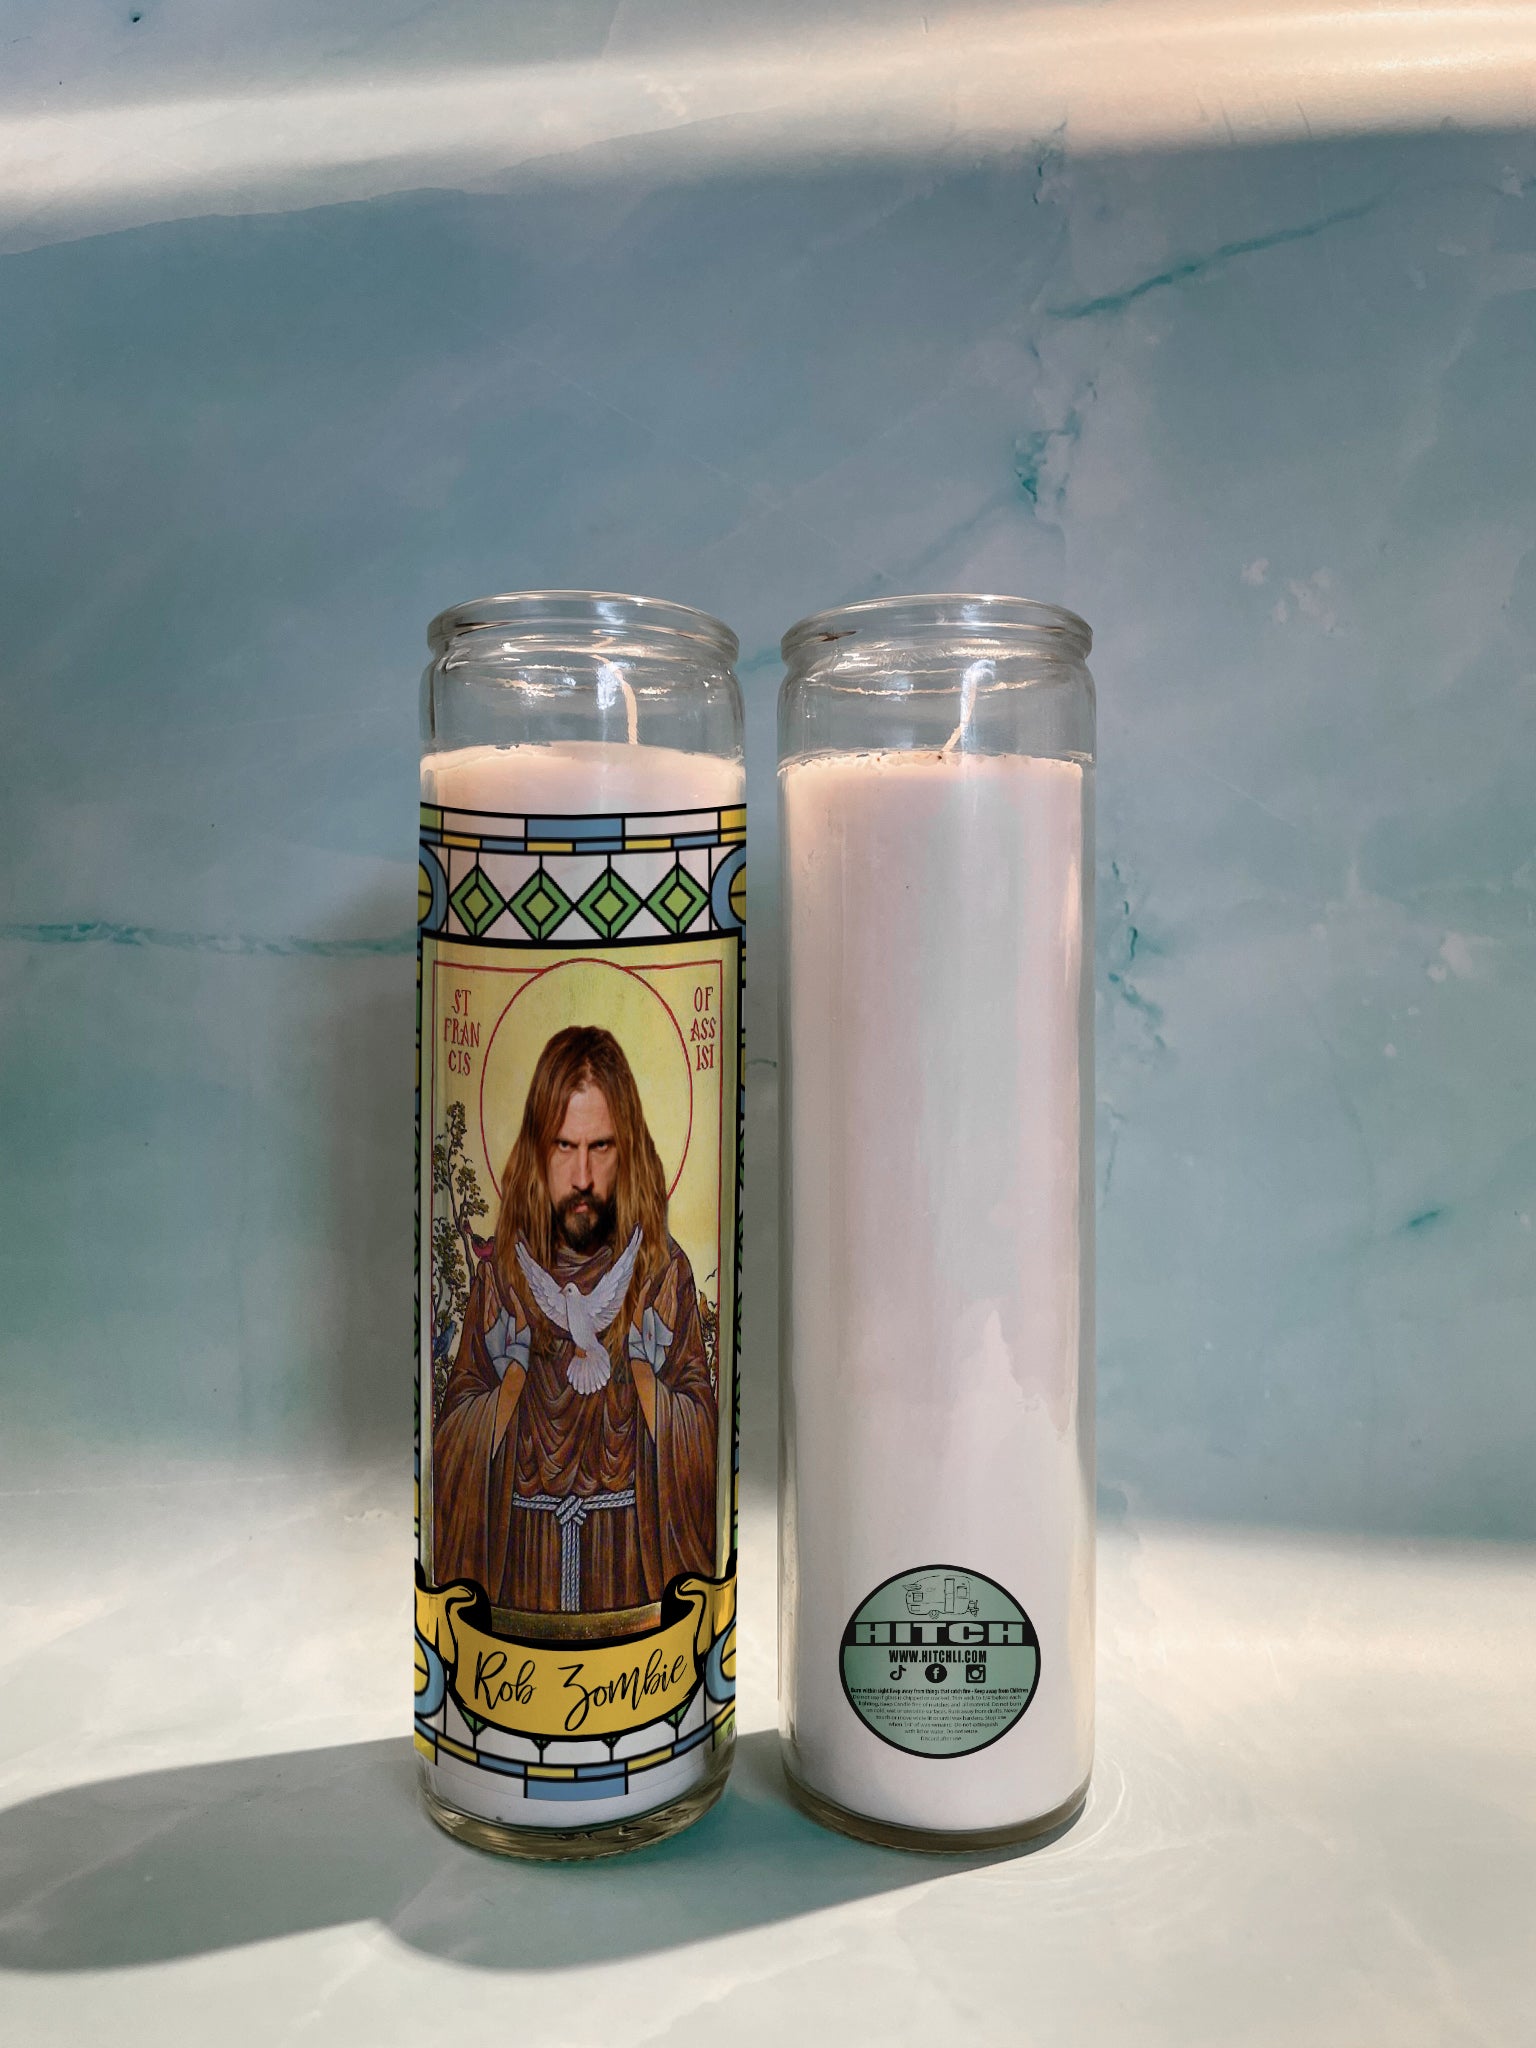 Rob Zombie Original Prayer Candle